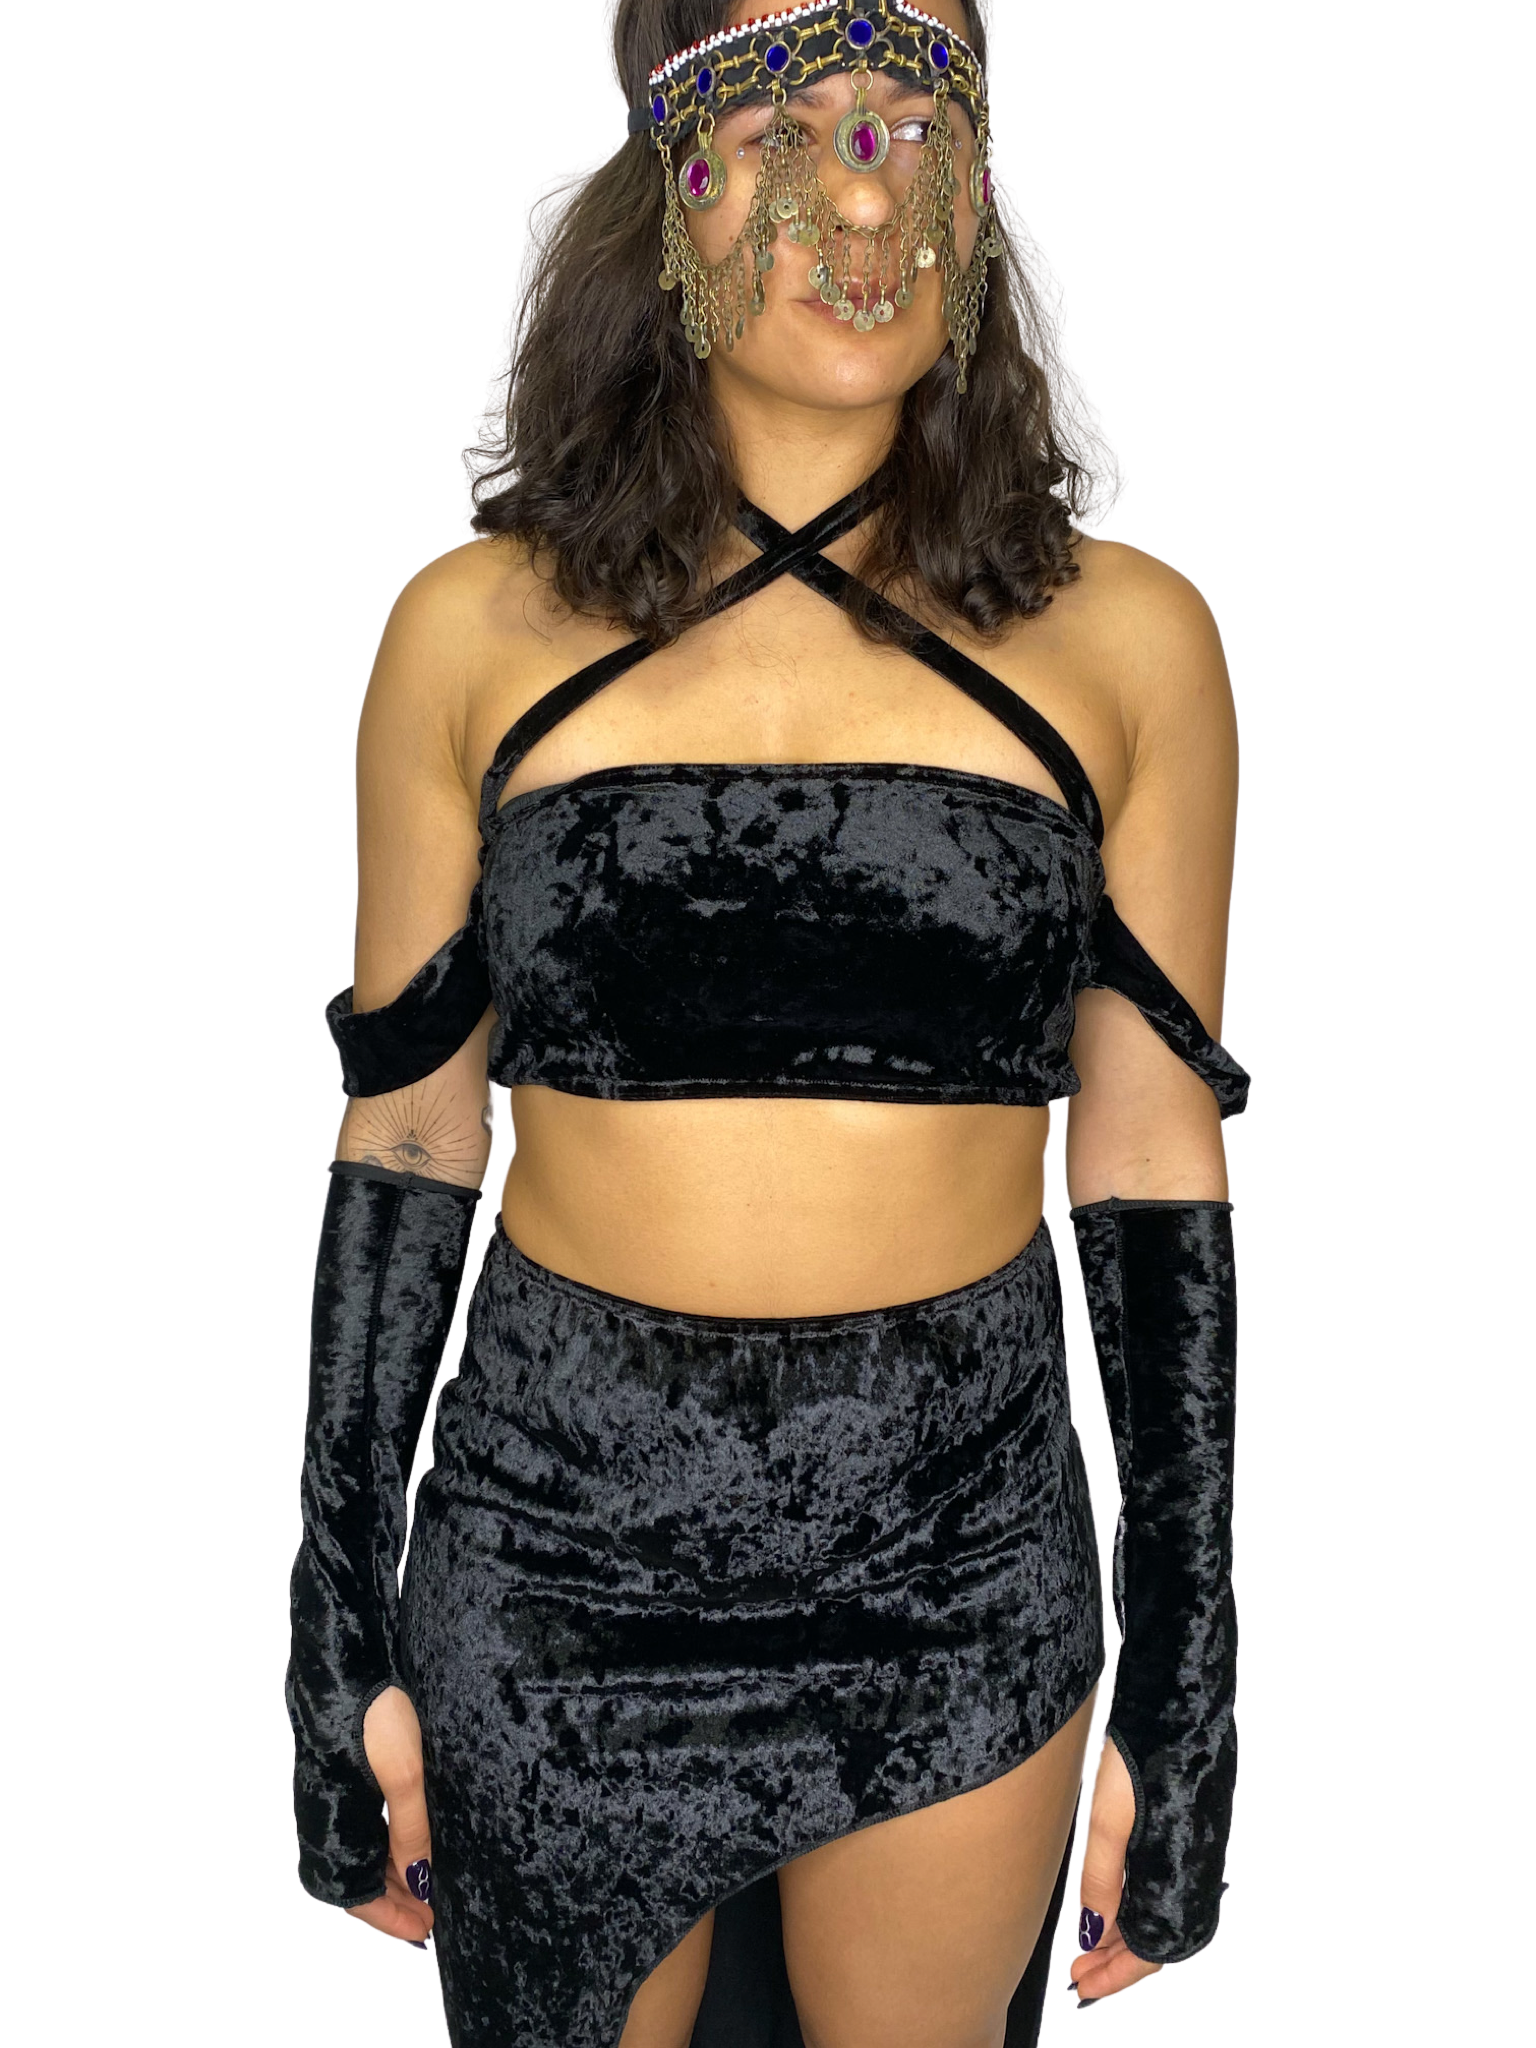 Diosa Black Crushed Velvet Arm Sleeves arm sleeves Mi Gente Clothing   